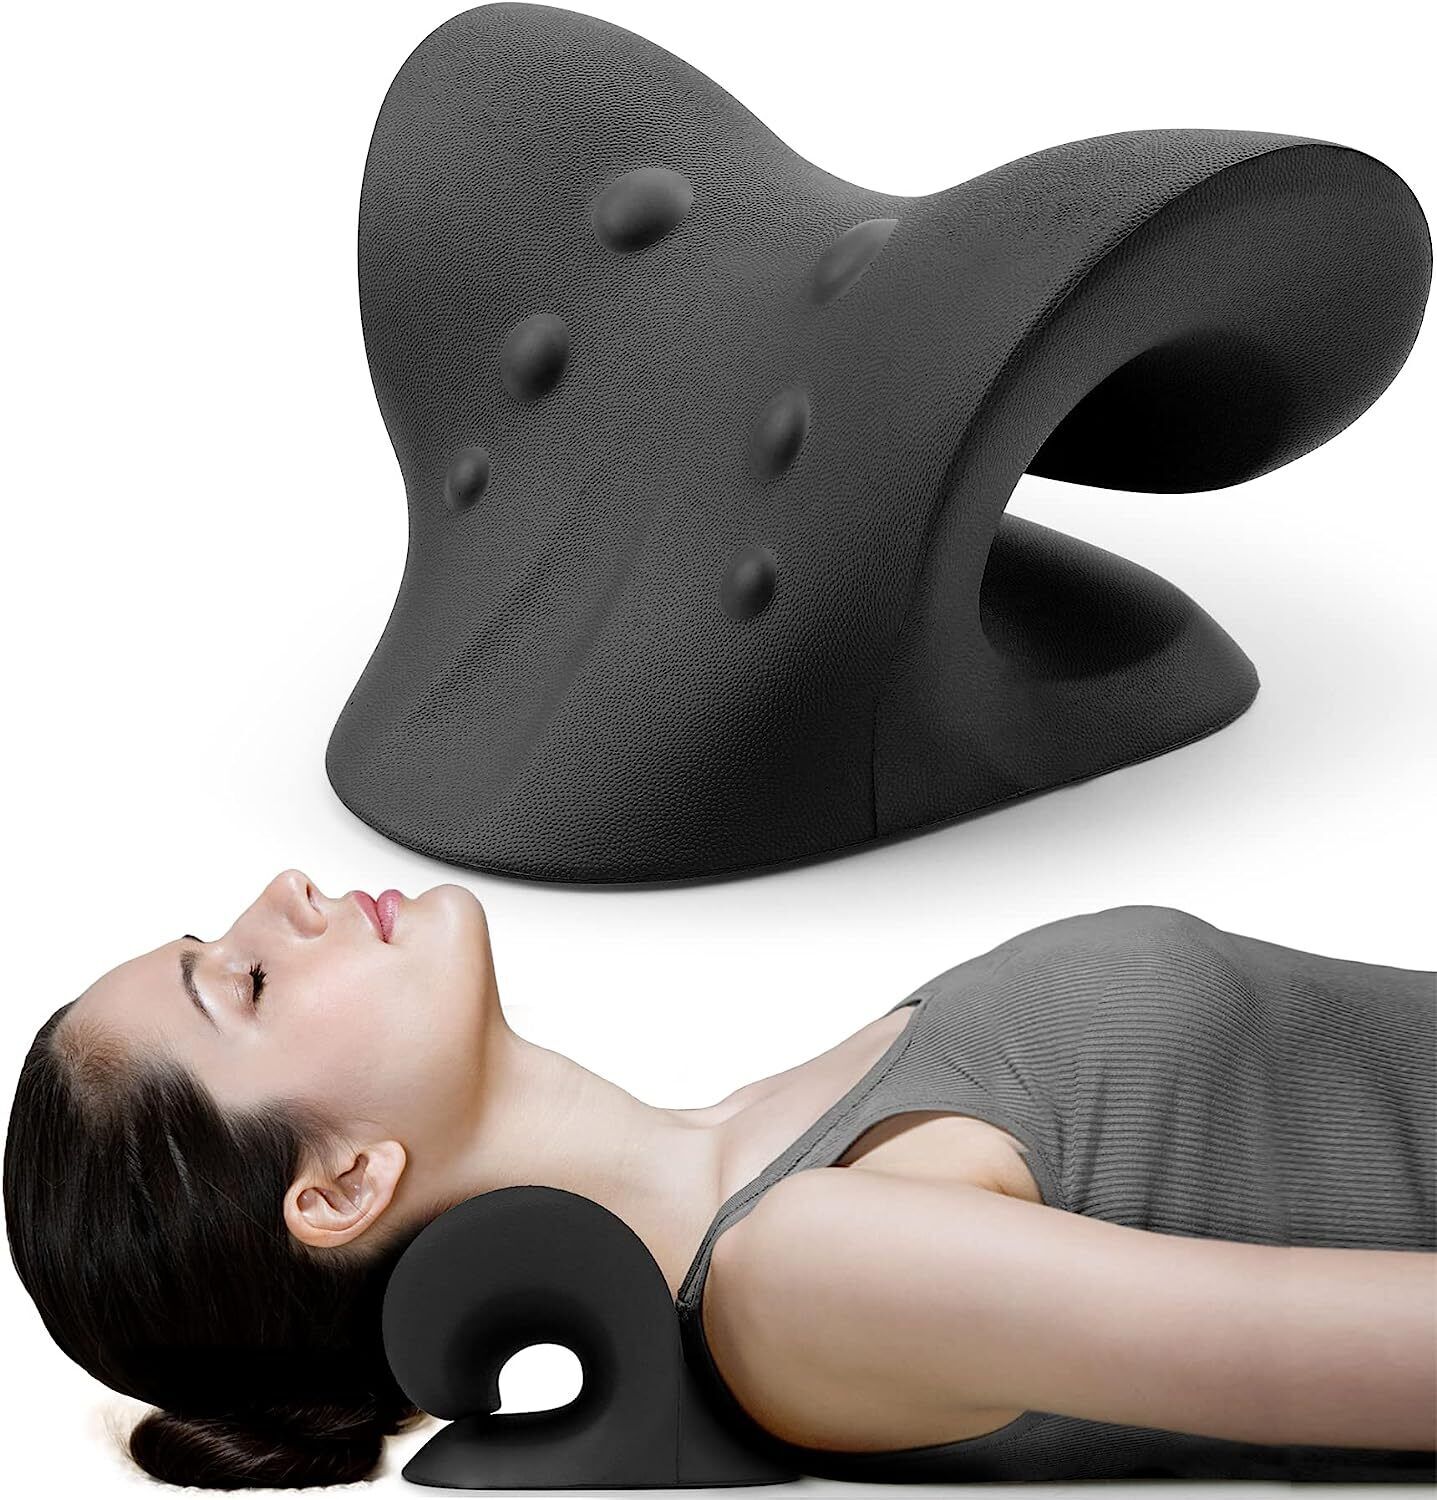 Neck Traction Pillow Original Cloud Shape Neck Stretcher Cervical Pain Relief